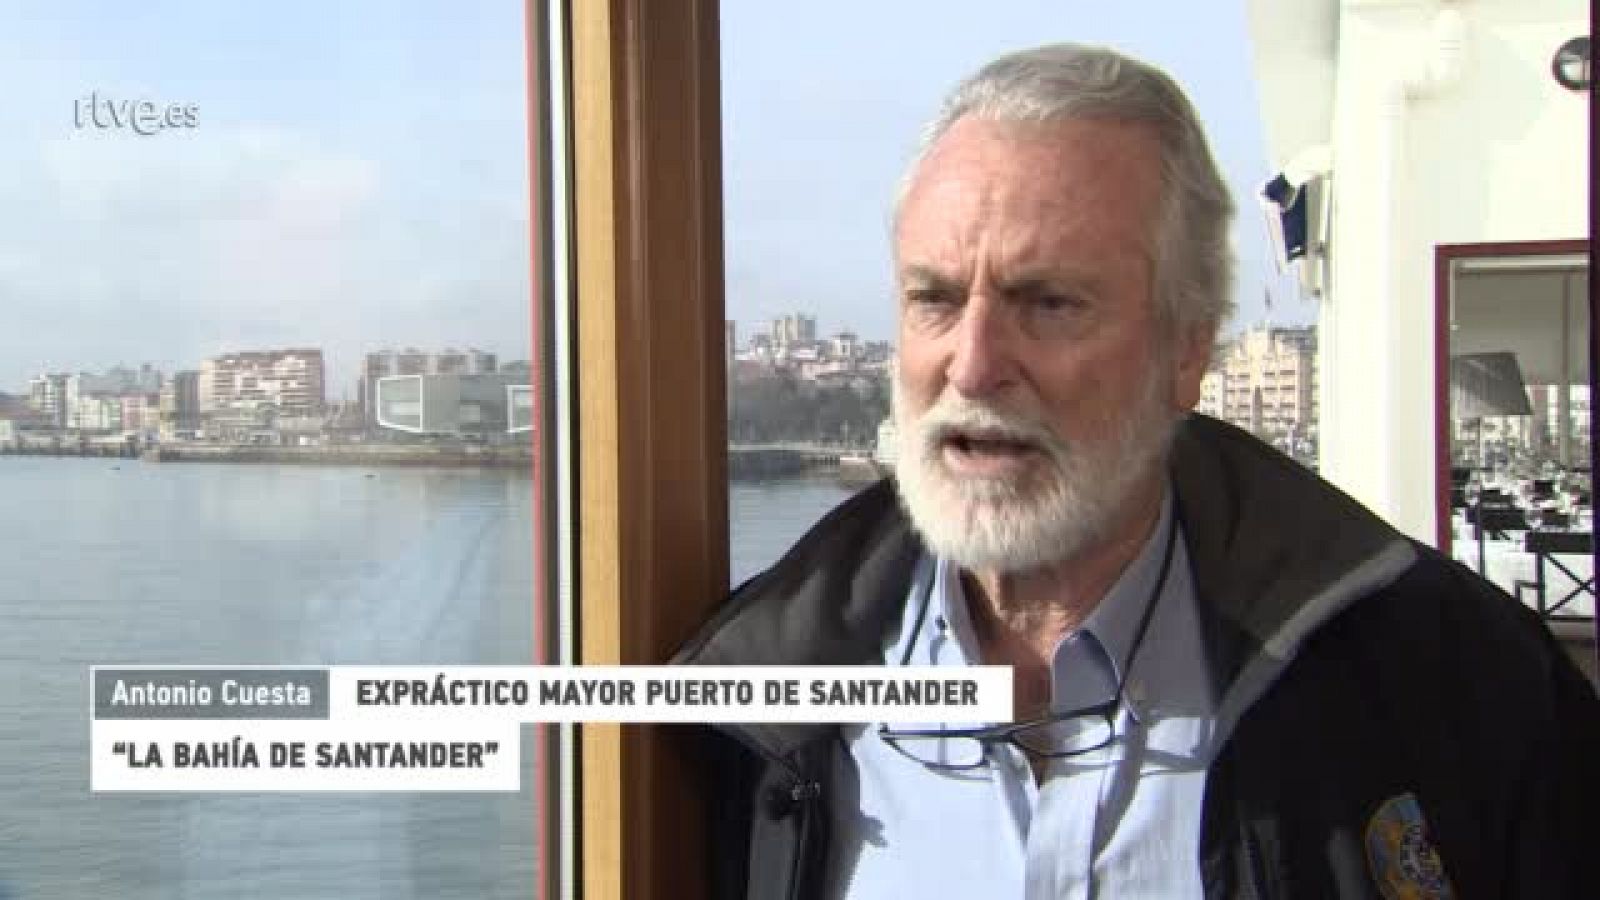 ¿Te acuerdas? | Antonio Cuesta, Expráctico Mayor Puerto de Santander - RTVE.es